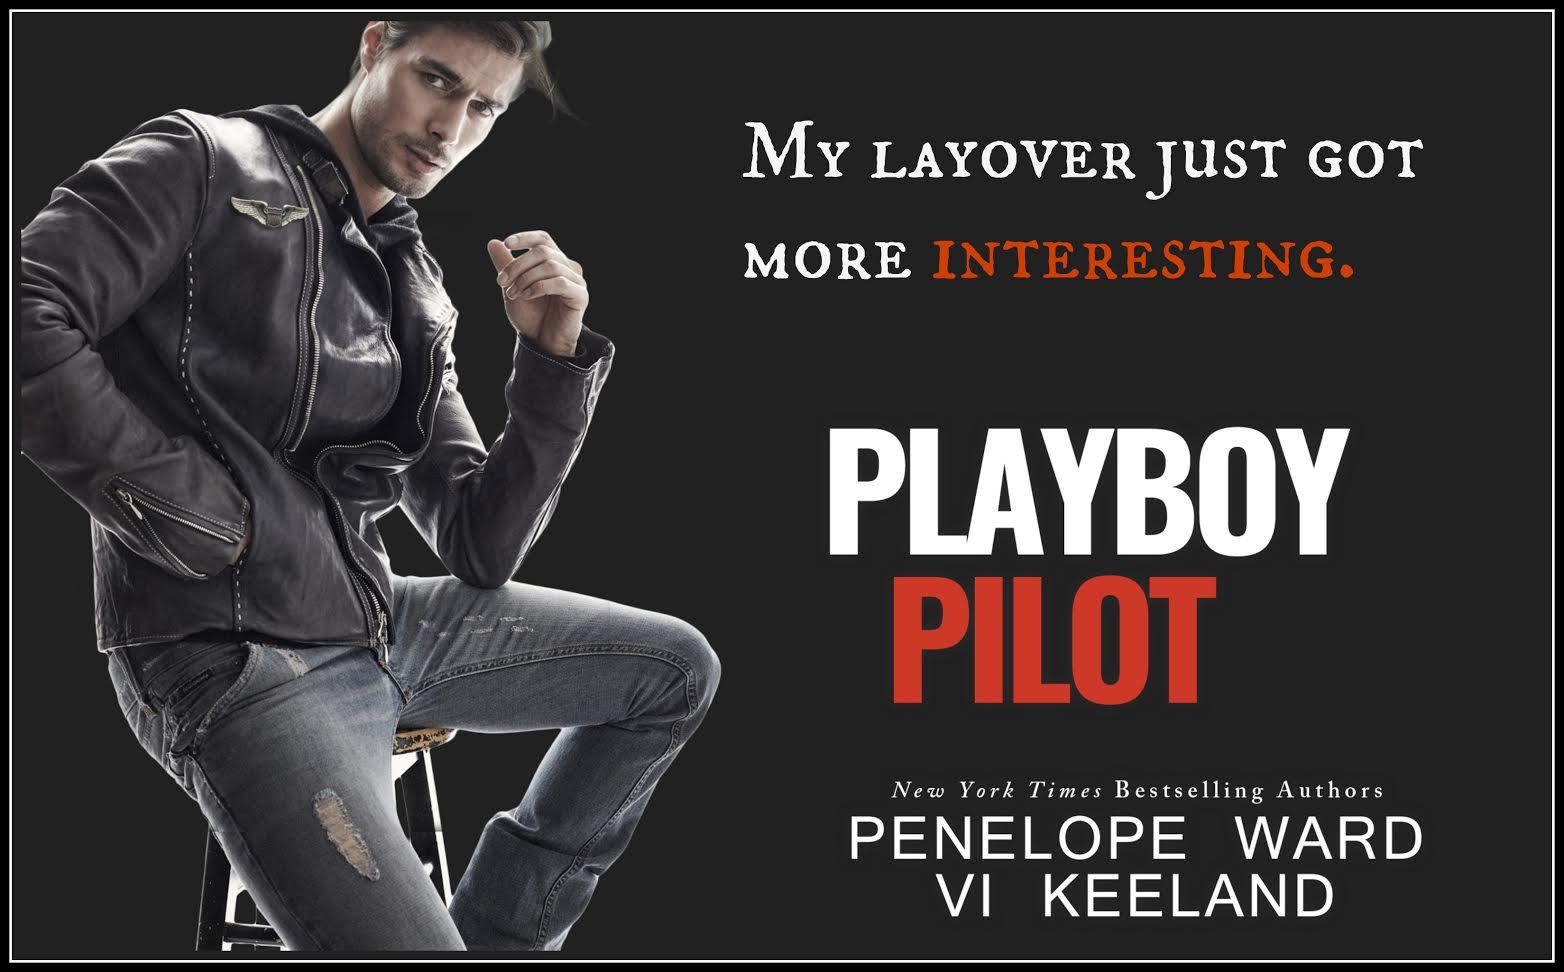 playboy pilot teeaser for release.jpg